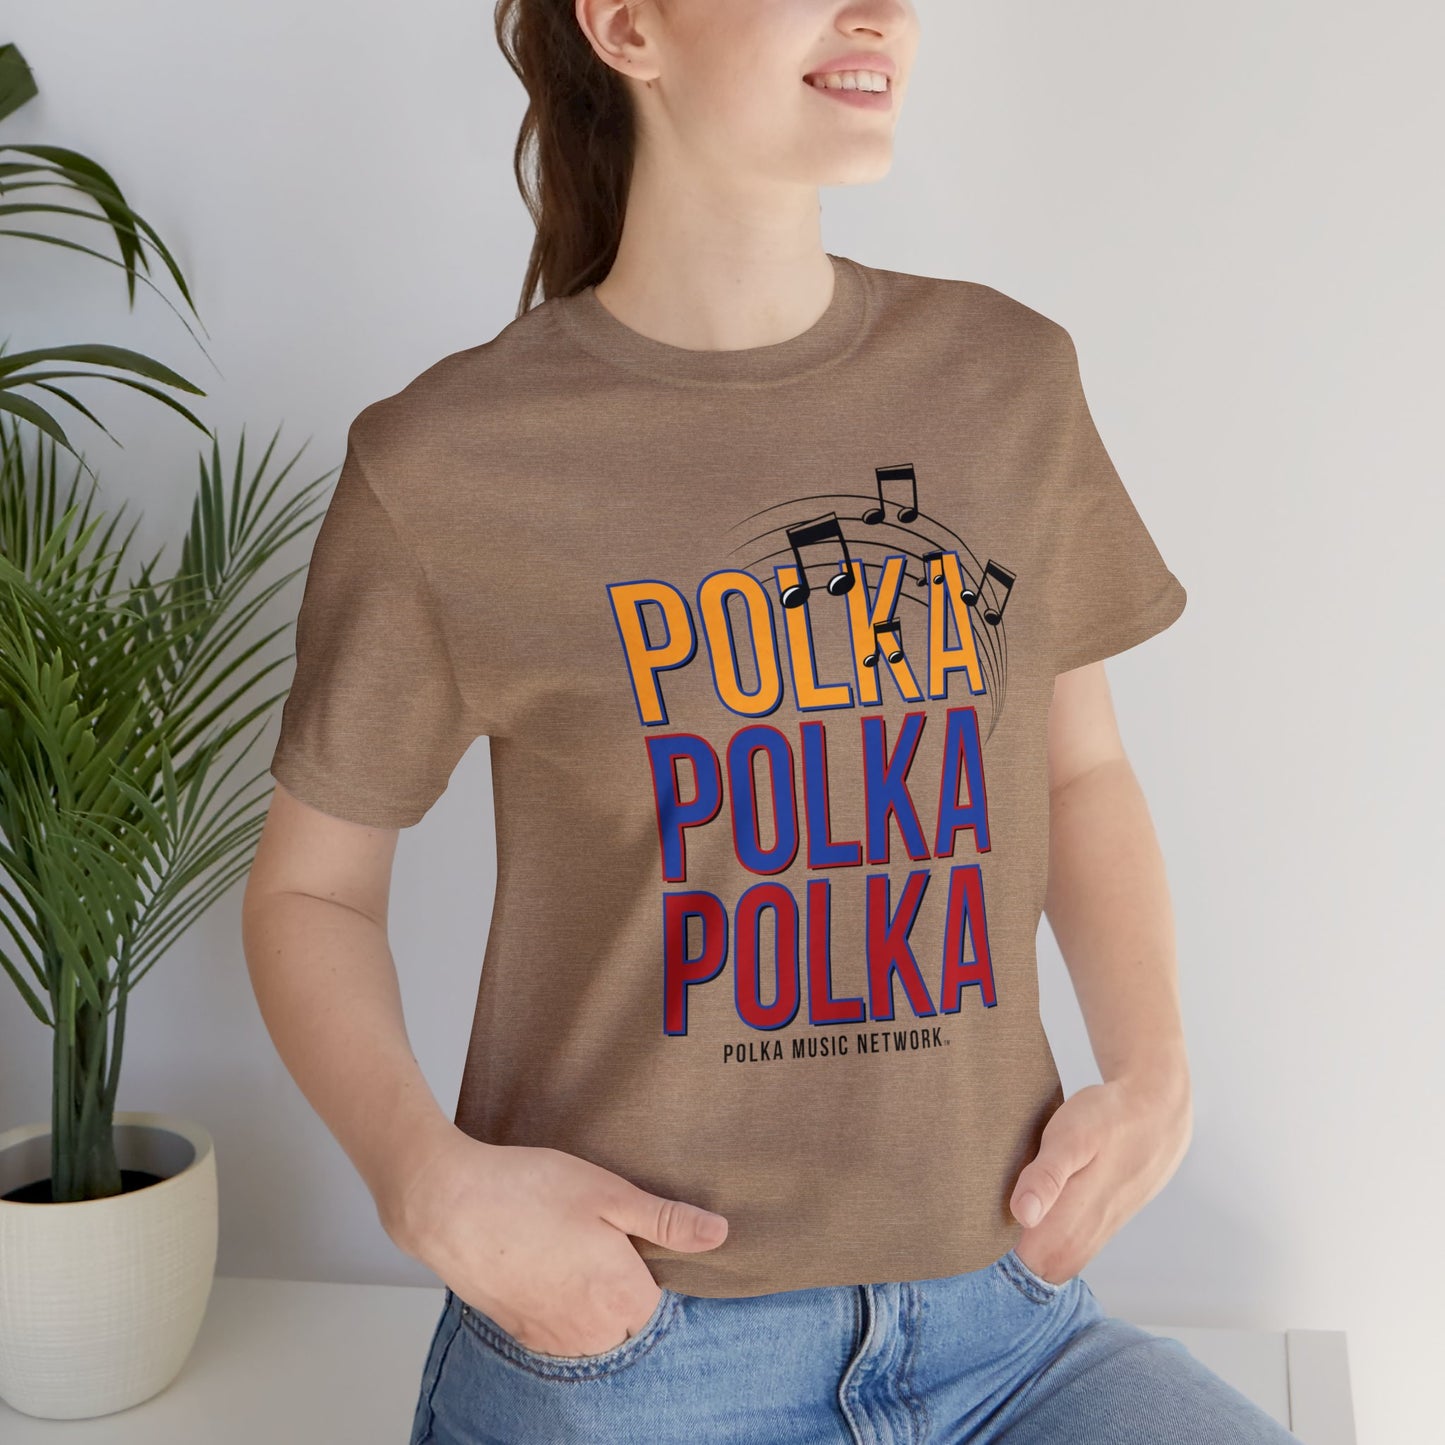 Polka, Polka, Polka Unisex Short Sleeve Tee